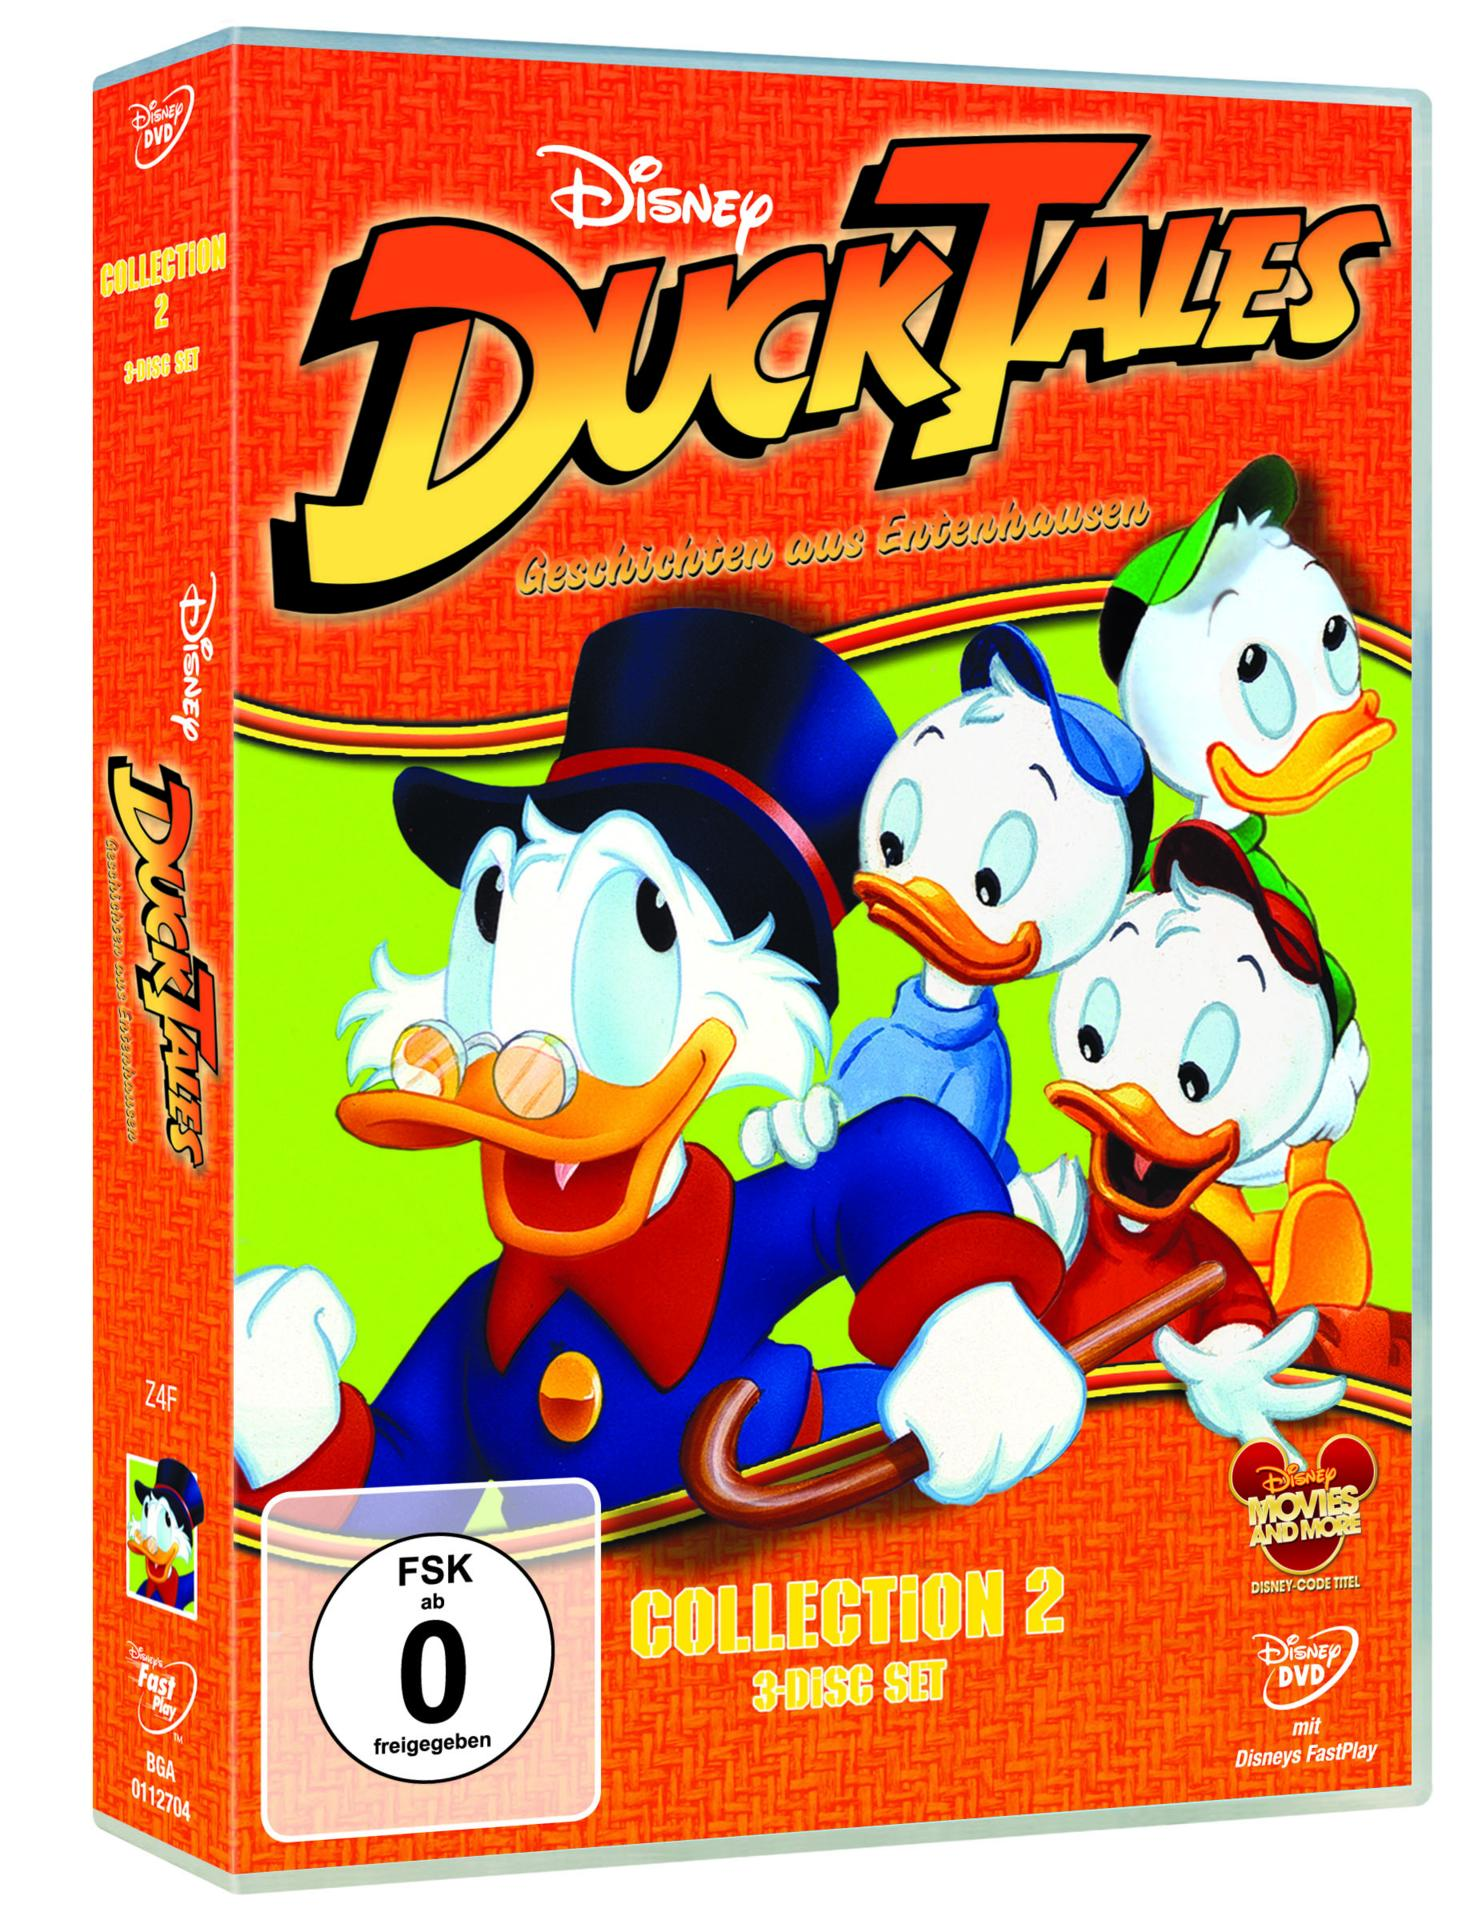 aus Ducktales Collection 2 Geschichten - Entenhausen DVD